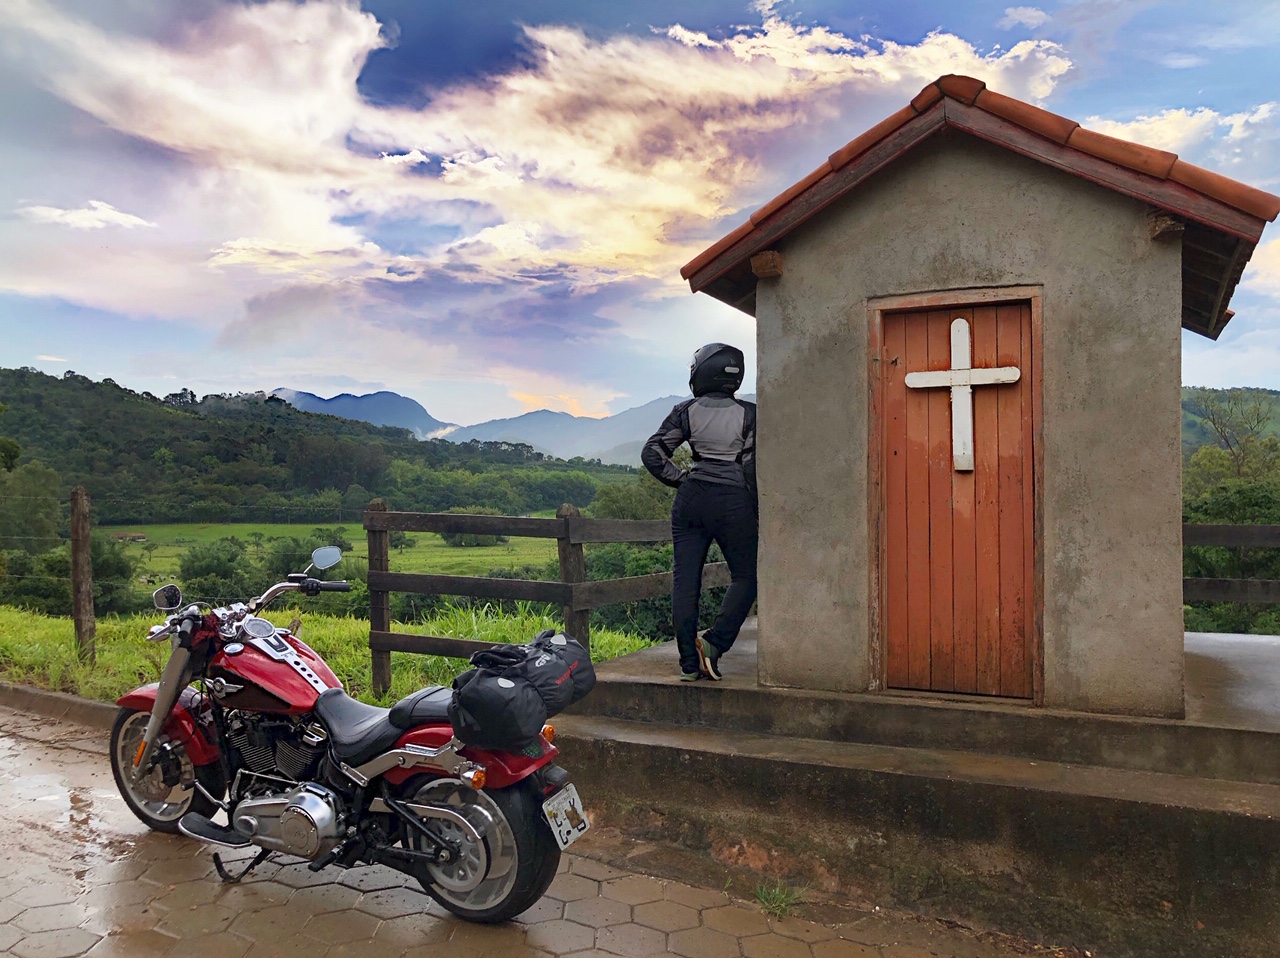 Viagem de moto: 6 lugares para conhecer em São Paulo - Motonline